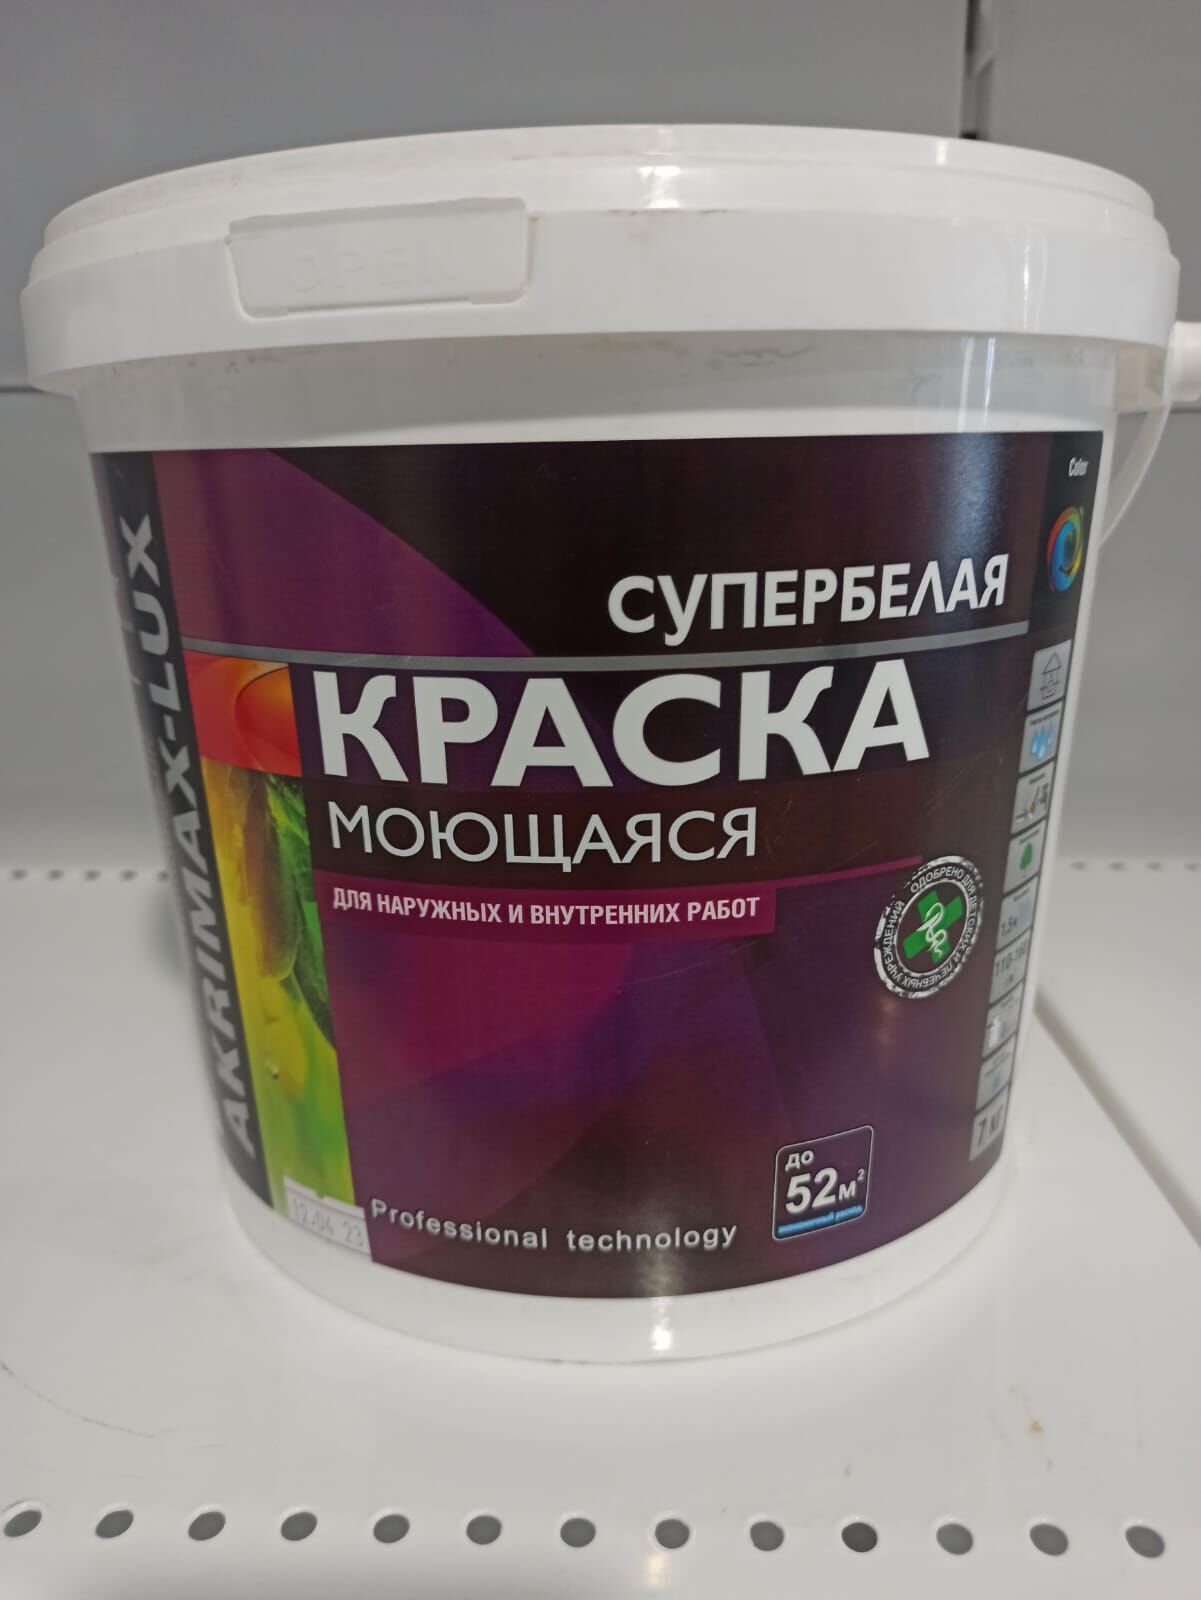 Краска AKRIMAX-LUX для наружных и внутренних работ моющаяся супербелая 7 кг